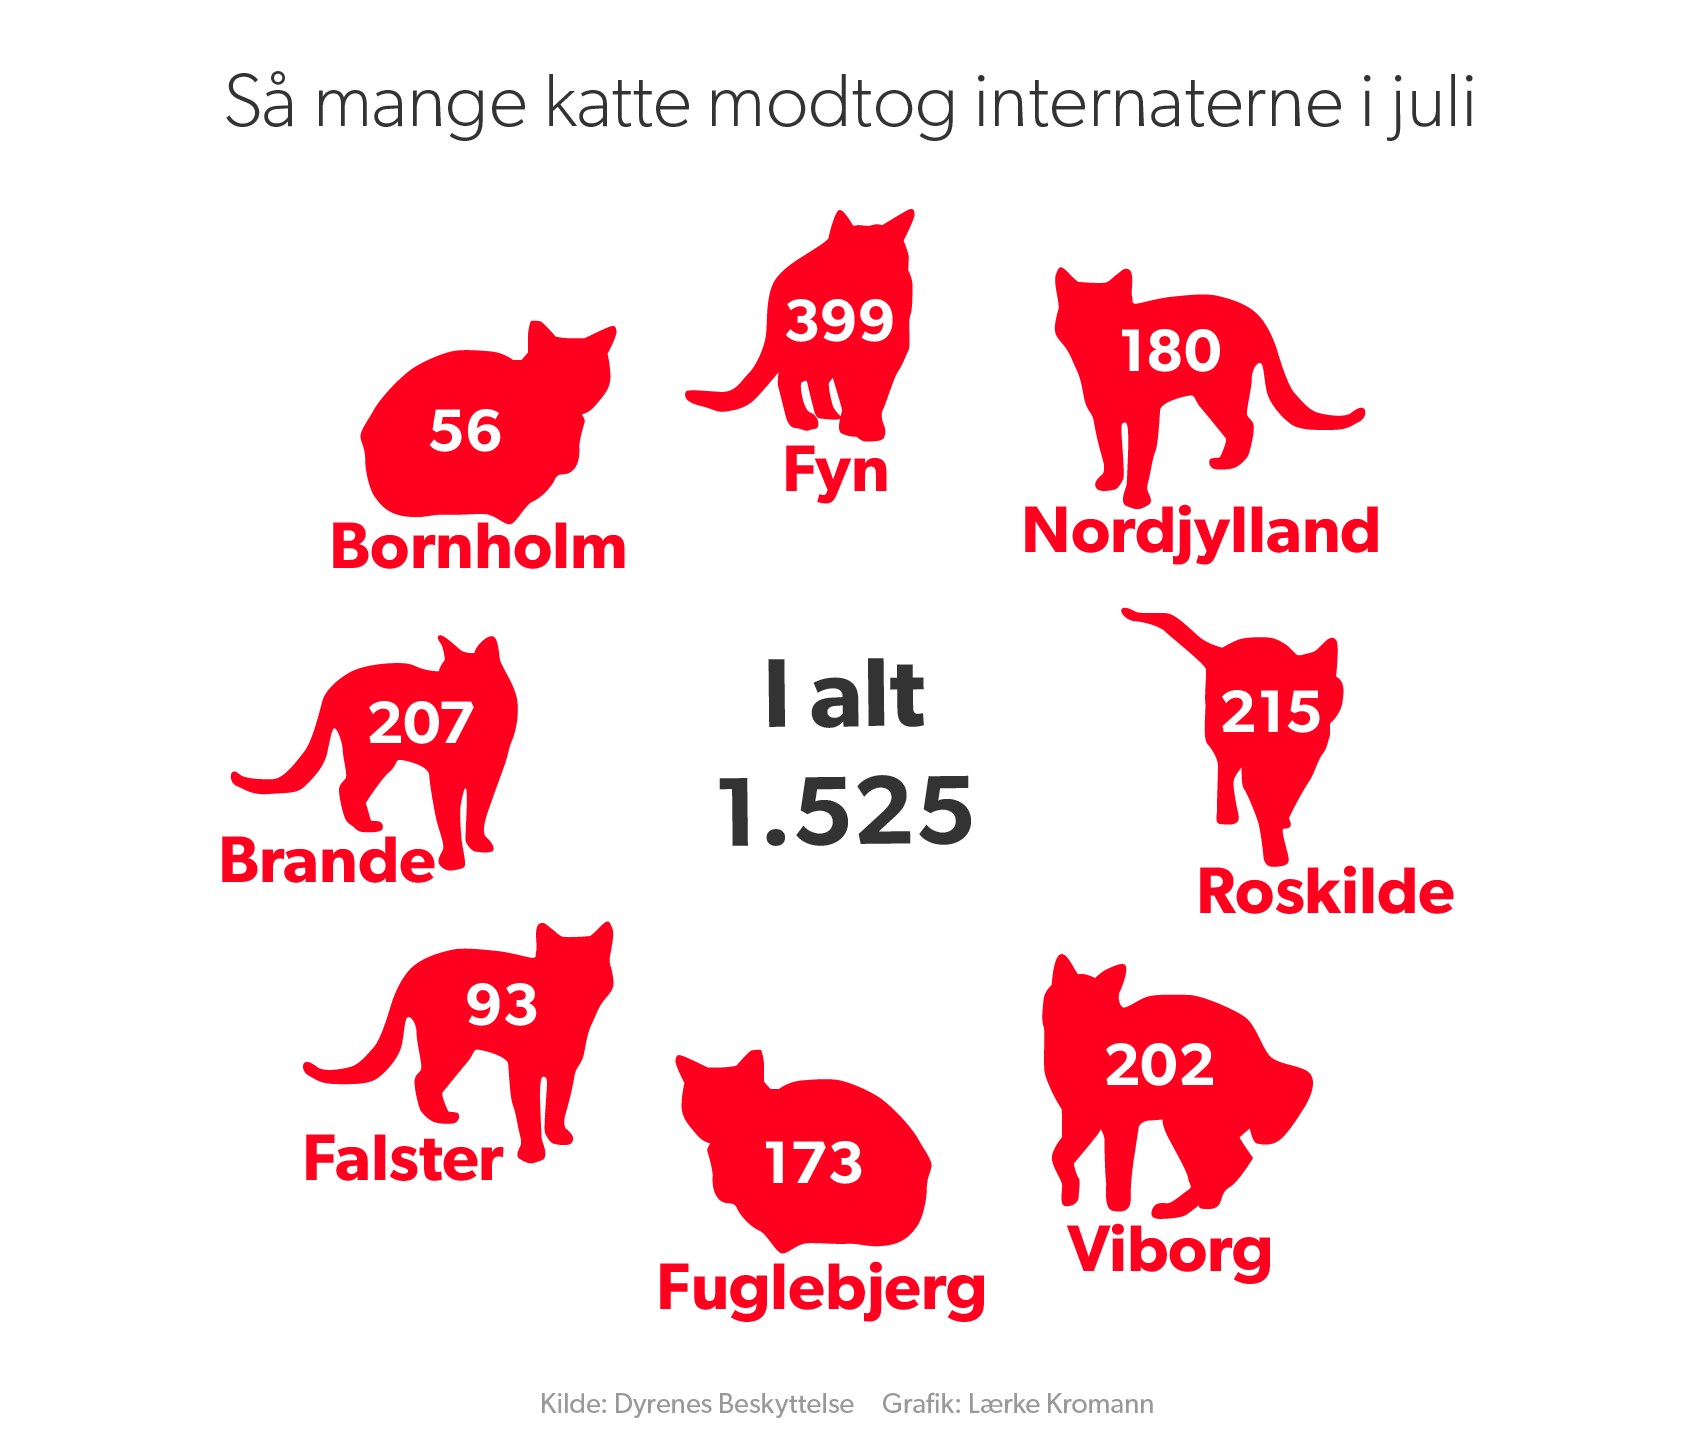 450 katte fire måneder: Internat i kasserede katte | Midt- og Vestjylland | DR